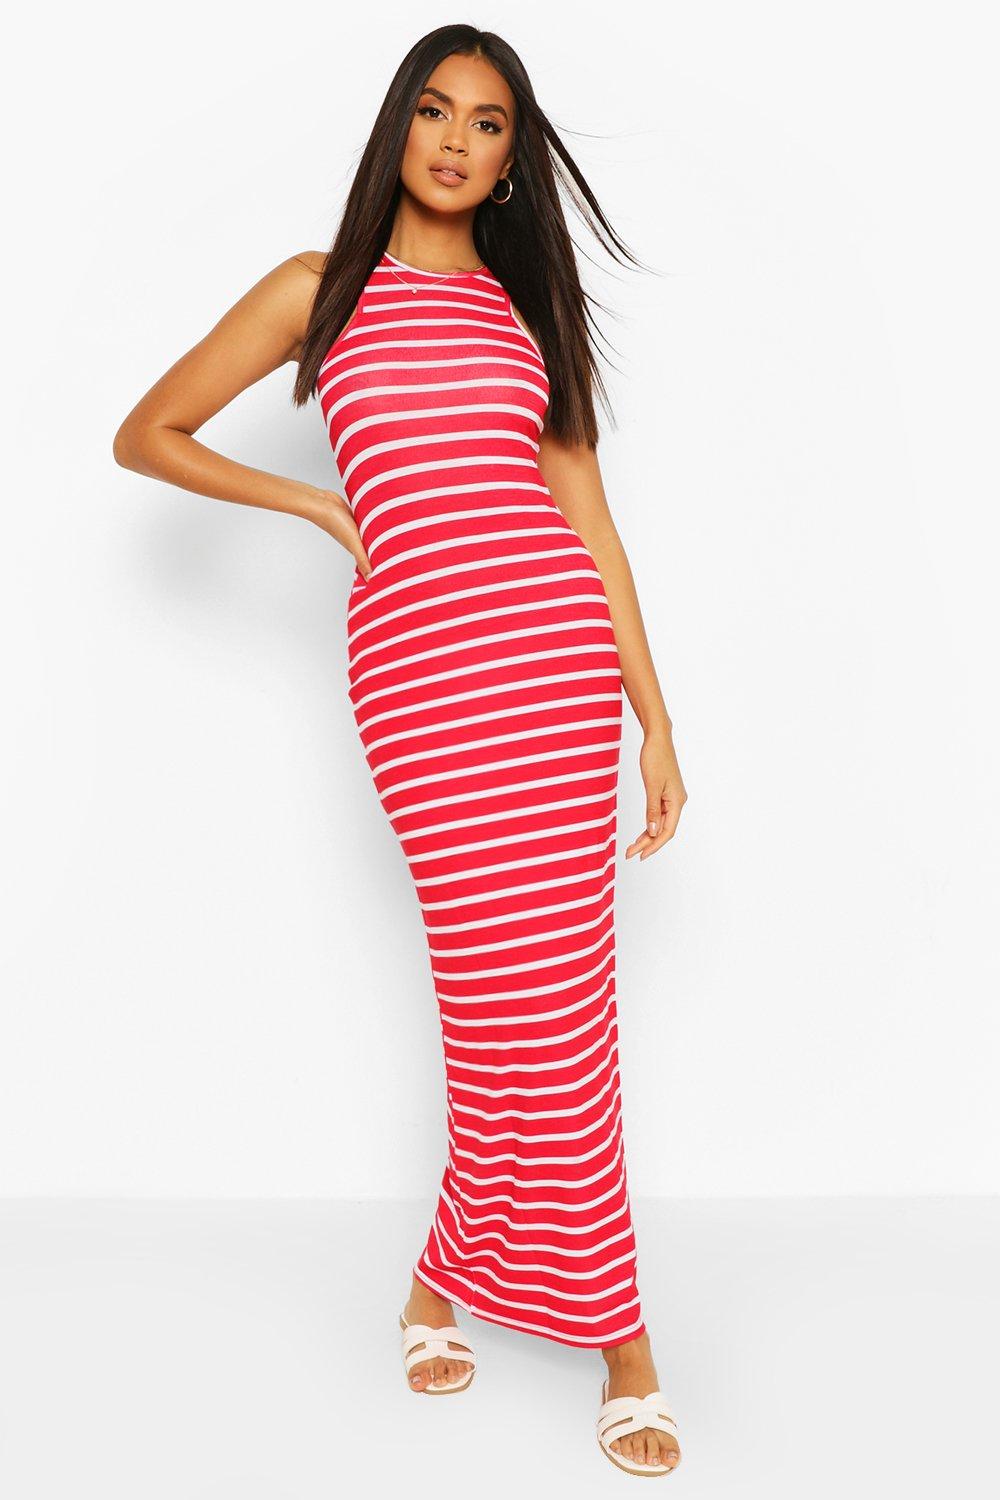 boohoo striped dress